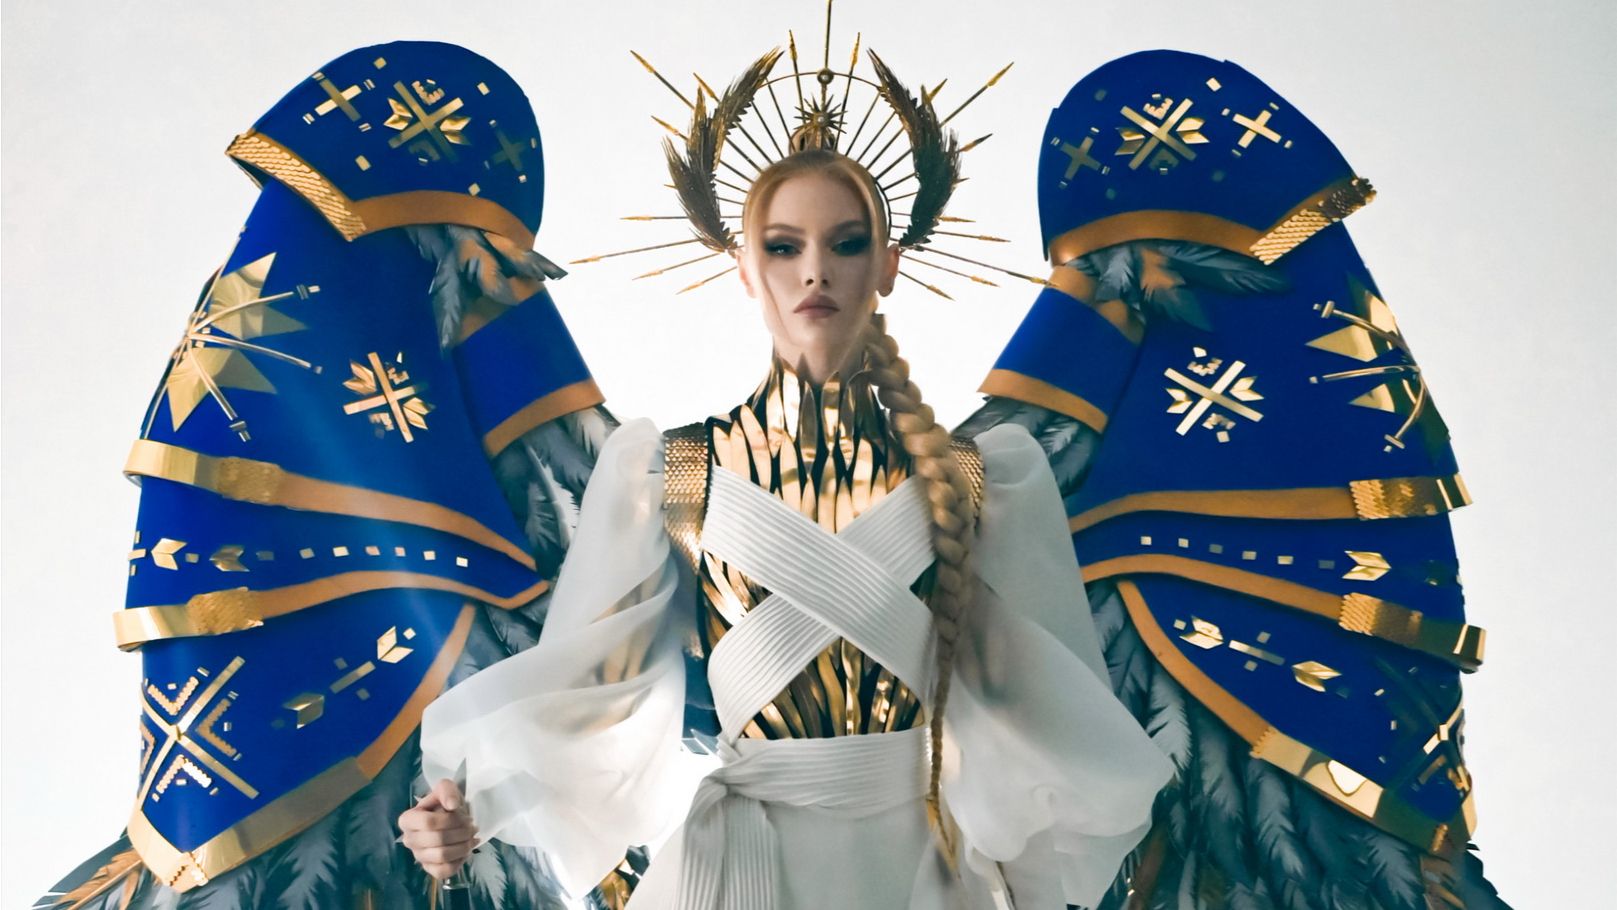 Міс Україна Всесвіт 2022 представила національний костюм - Апанасенко поїде у США, фото